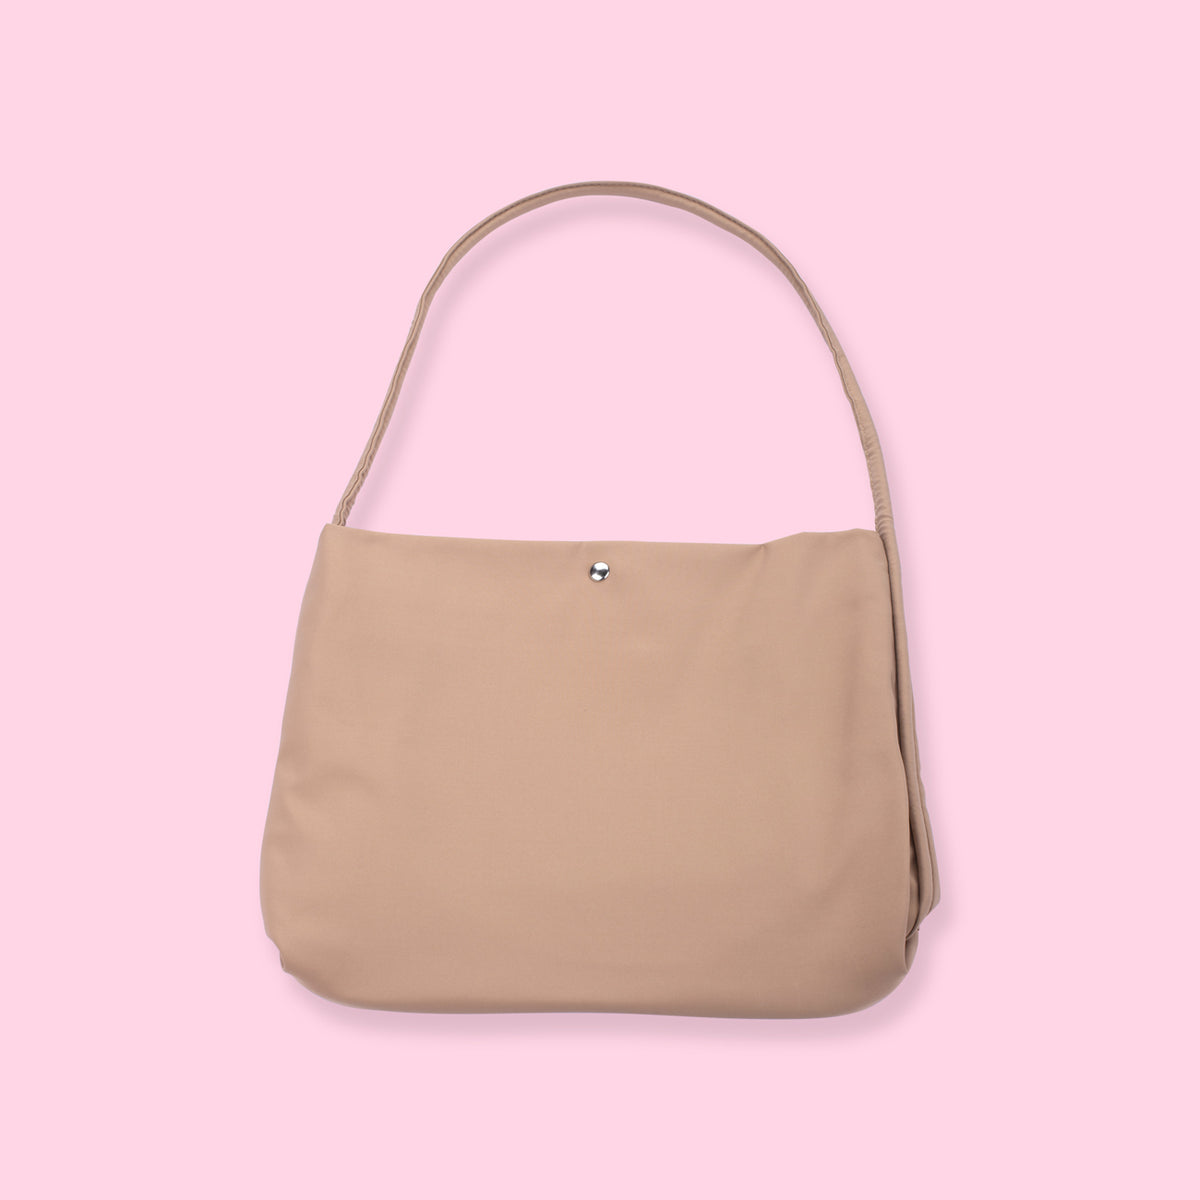 Say yes to Backpack series lagi!😍 Zhafira Backpack💕 tas gemesh dan lucu  ala-ala Korean Style ini cocok banget fix dipakai jalan-jalan di a… |  Instagram